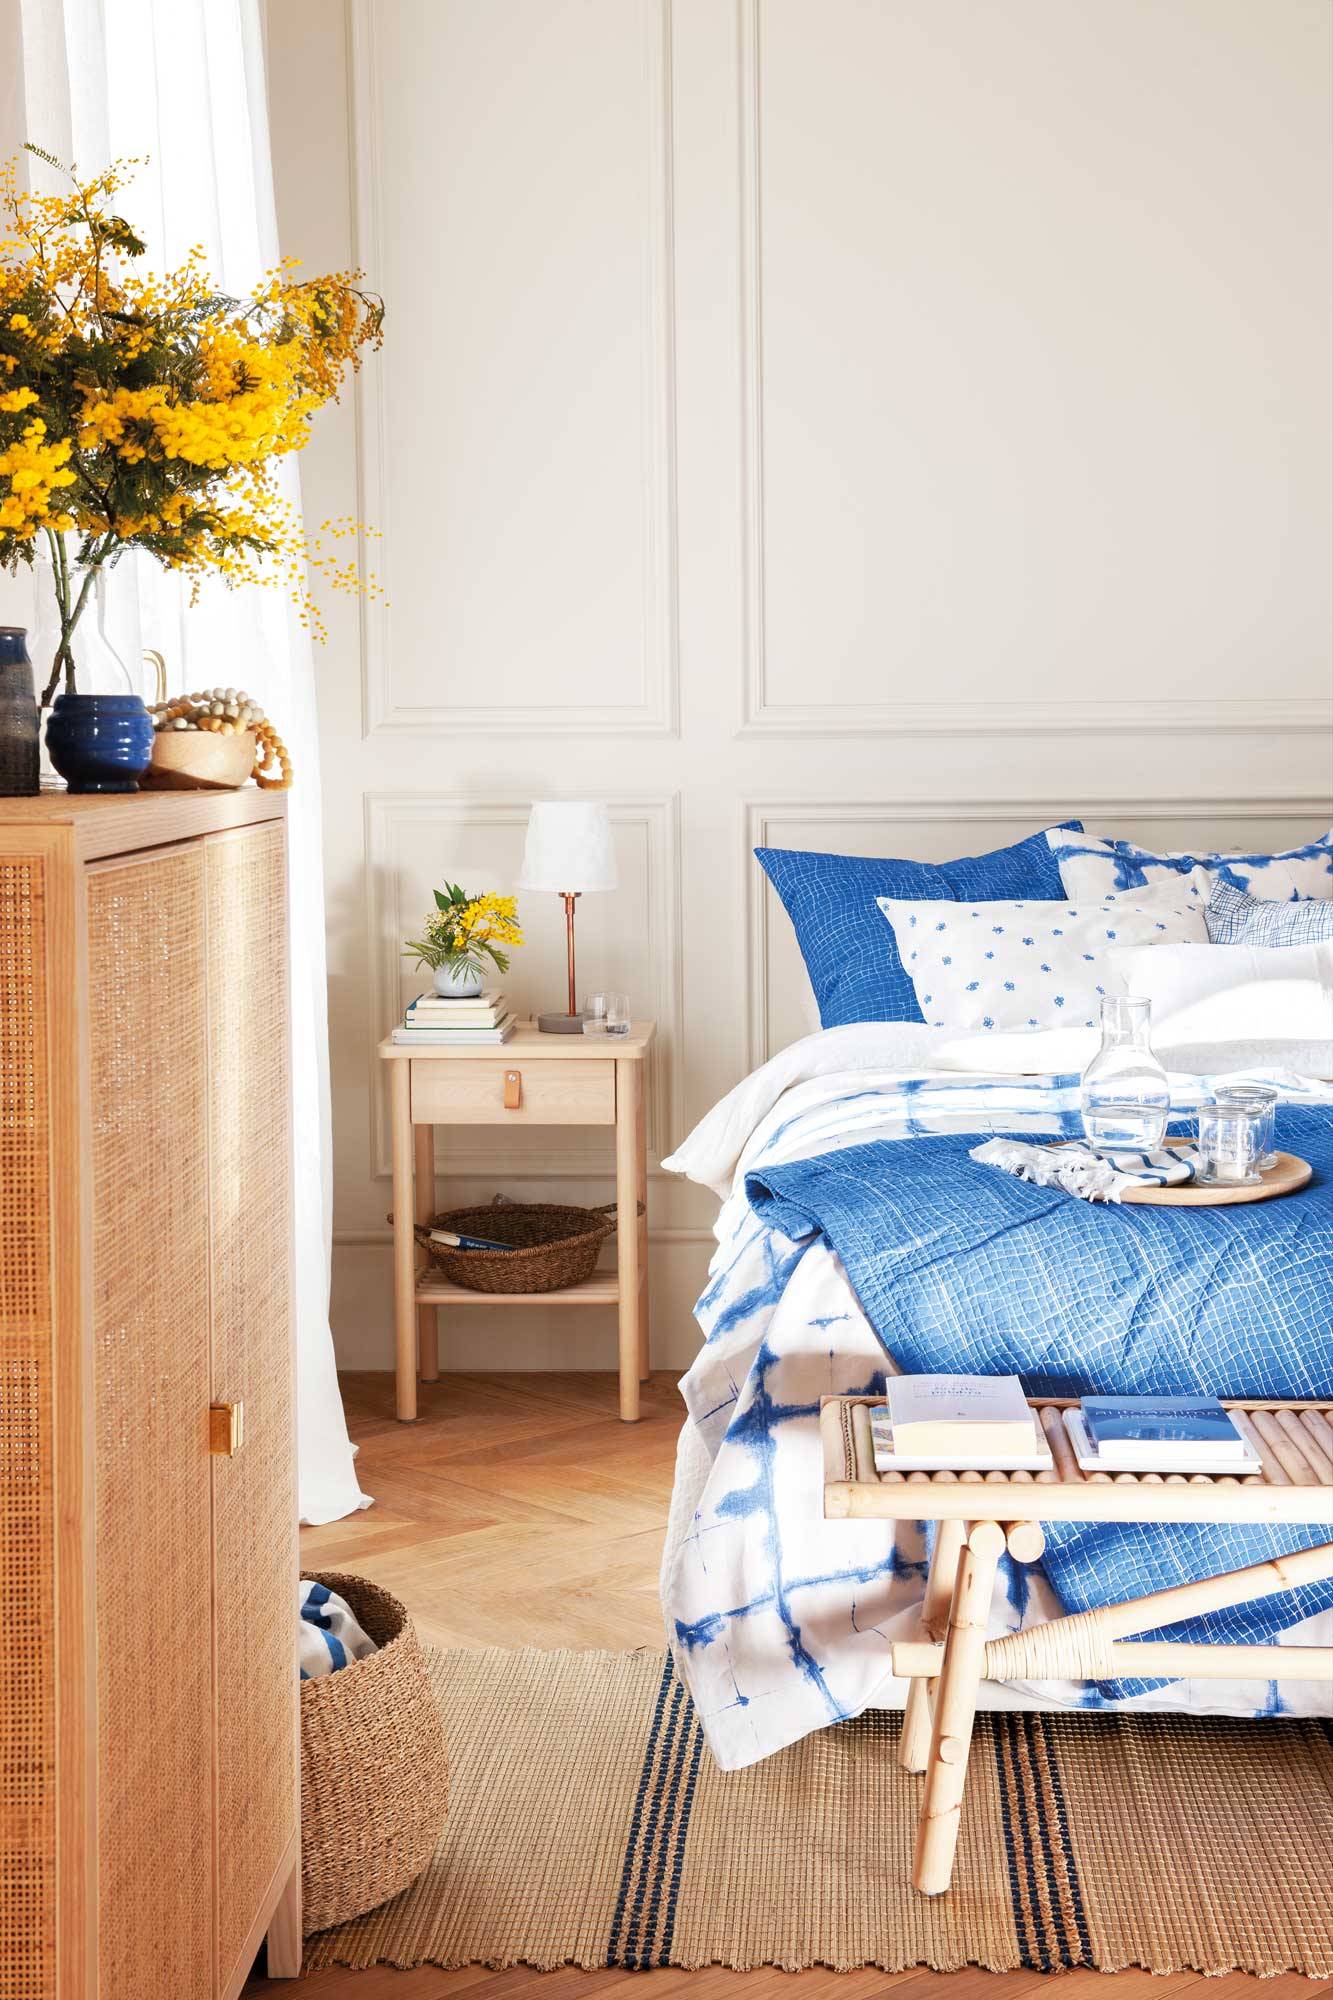 Dormitorio con pared con molduras y ropa de cama azul y blanca.